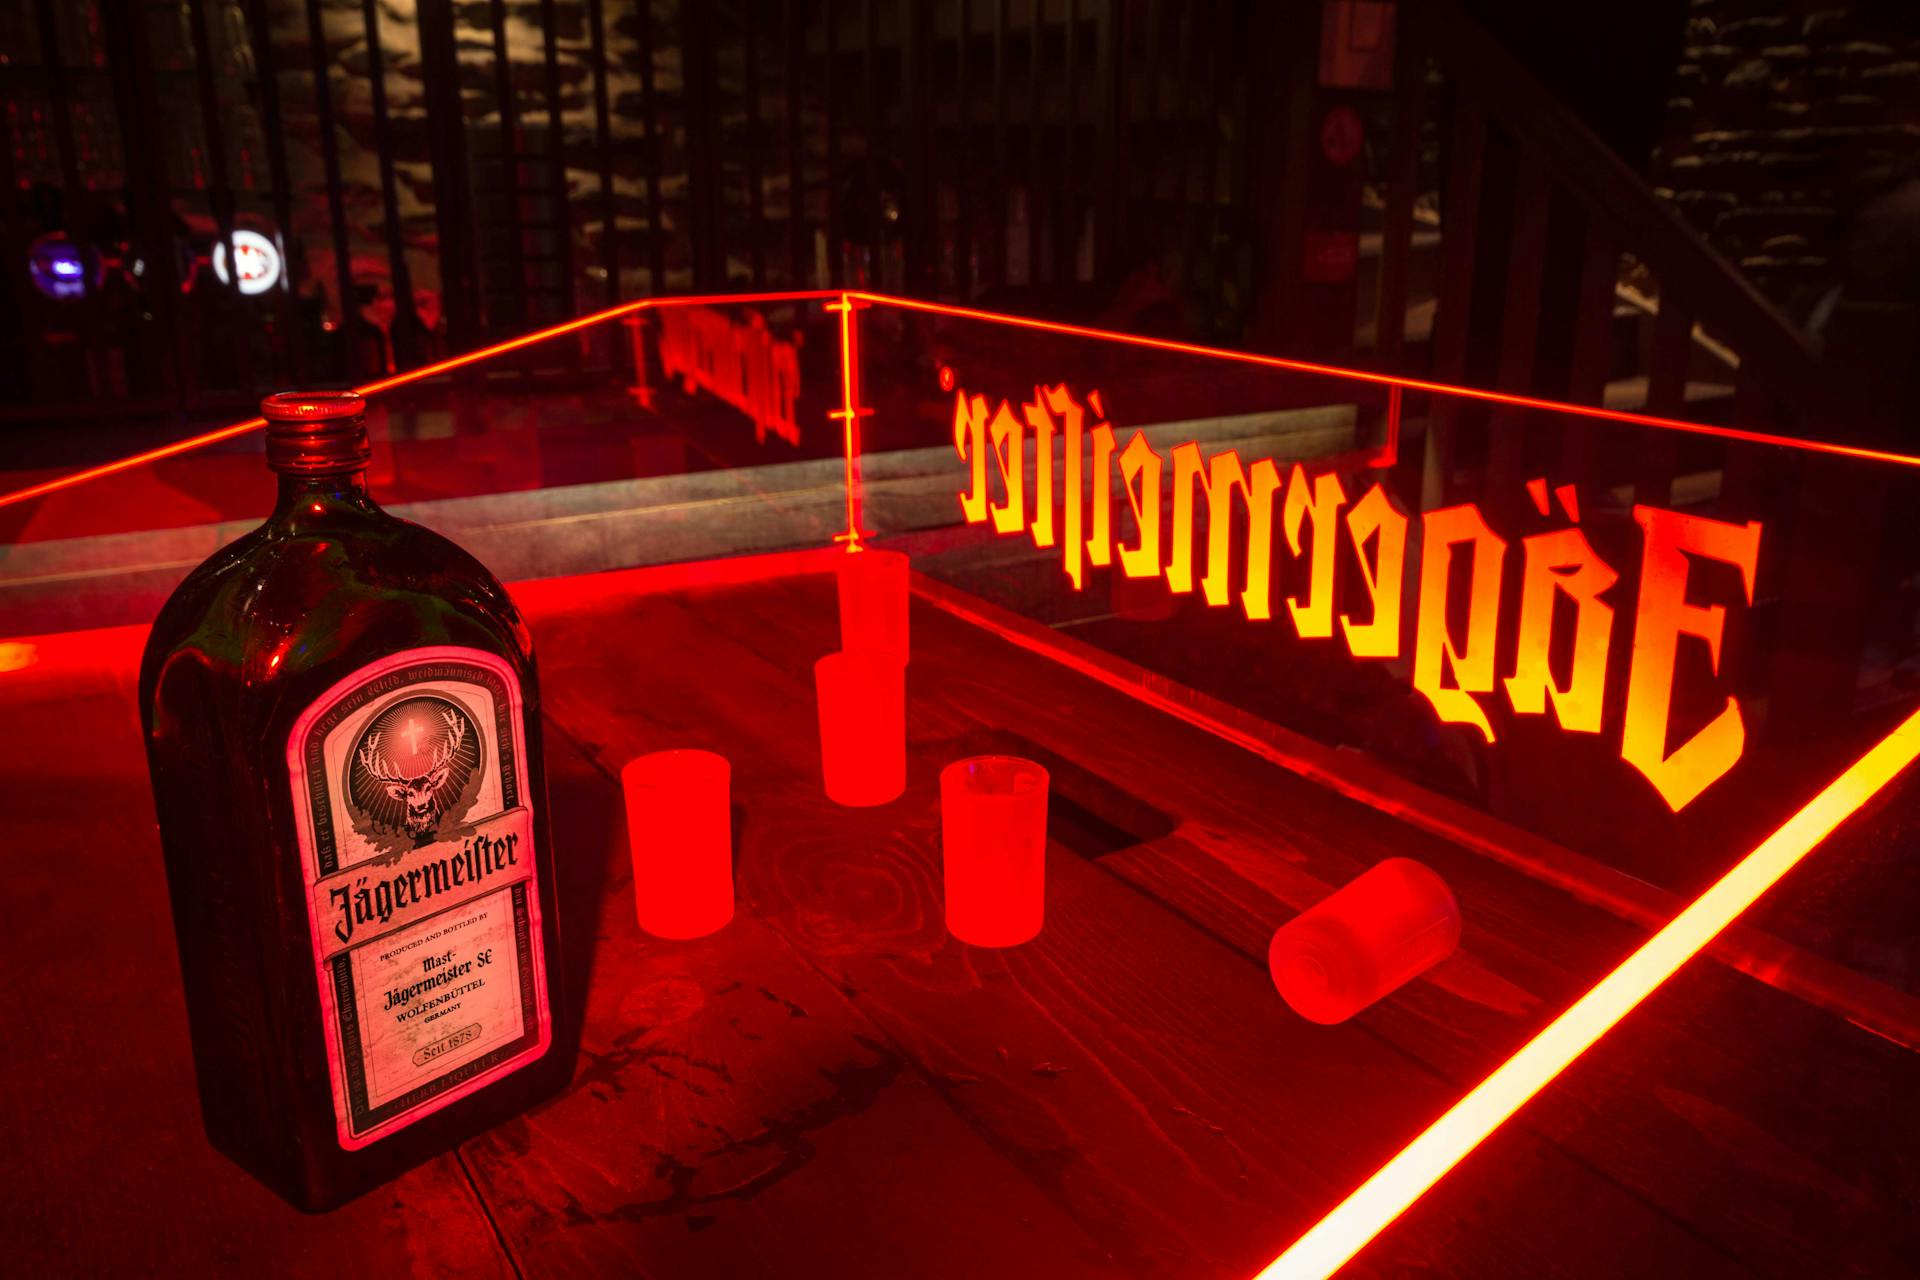 Design produit d'une cabine de DJ Jägermeister réalisé par Studio Katra. La cabine supporte une bouteille de liqueur Jägermeister et des verres à shooters.